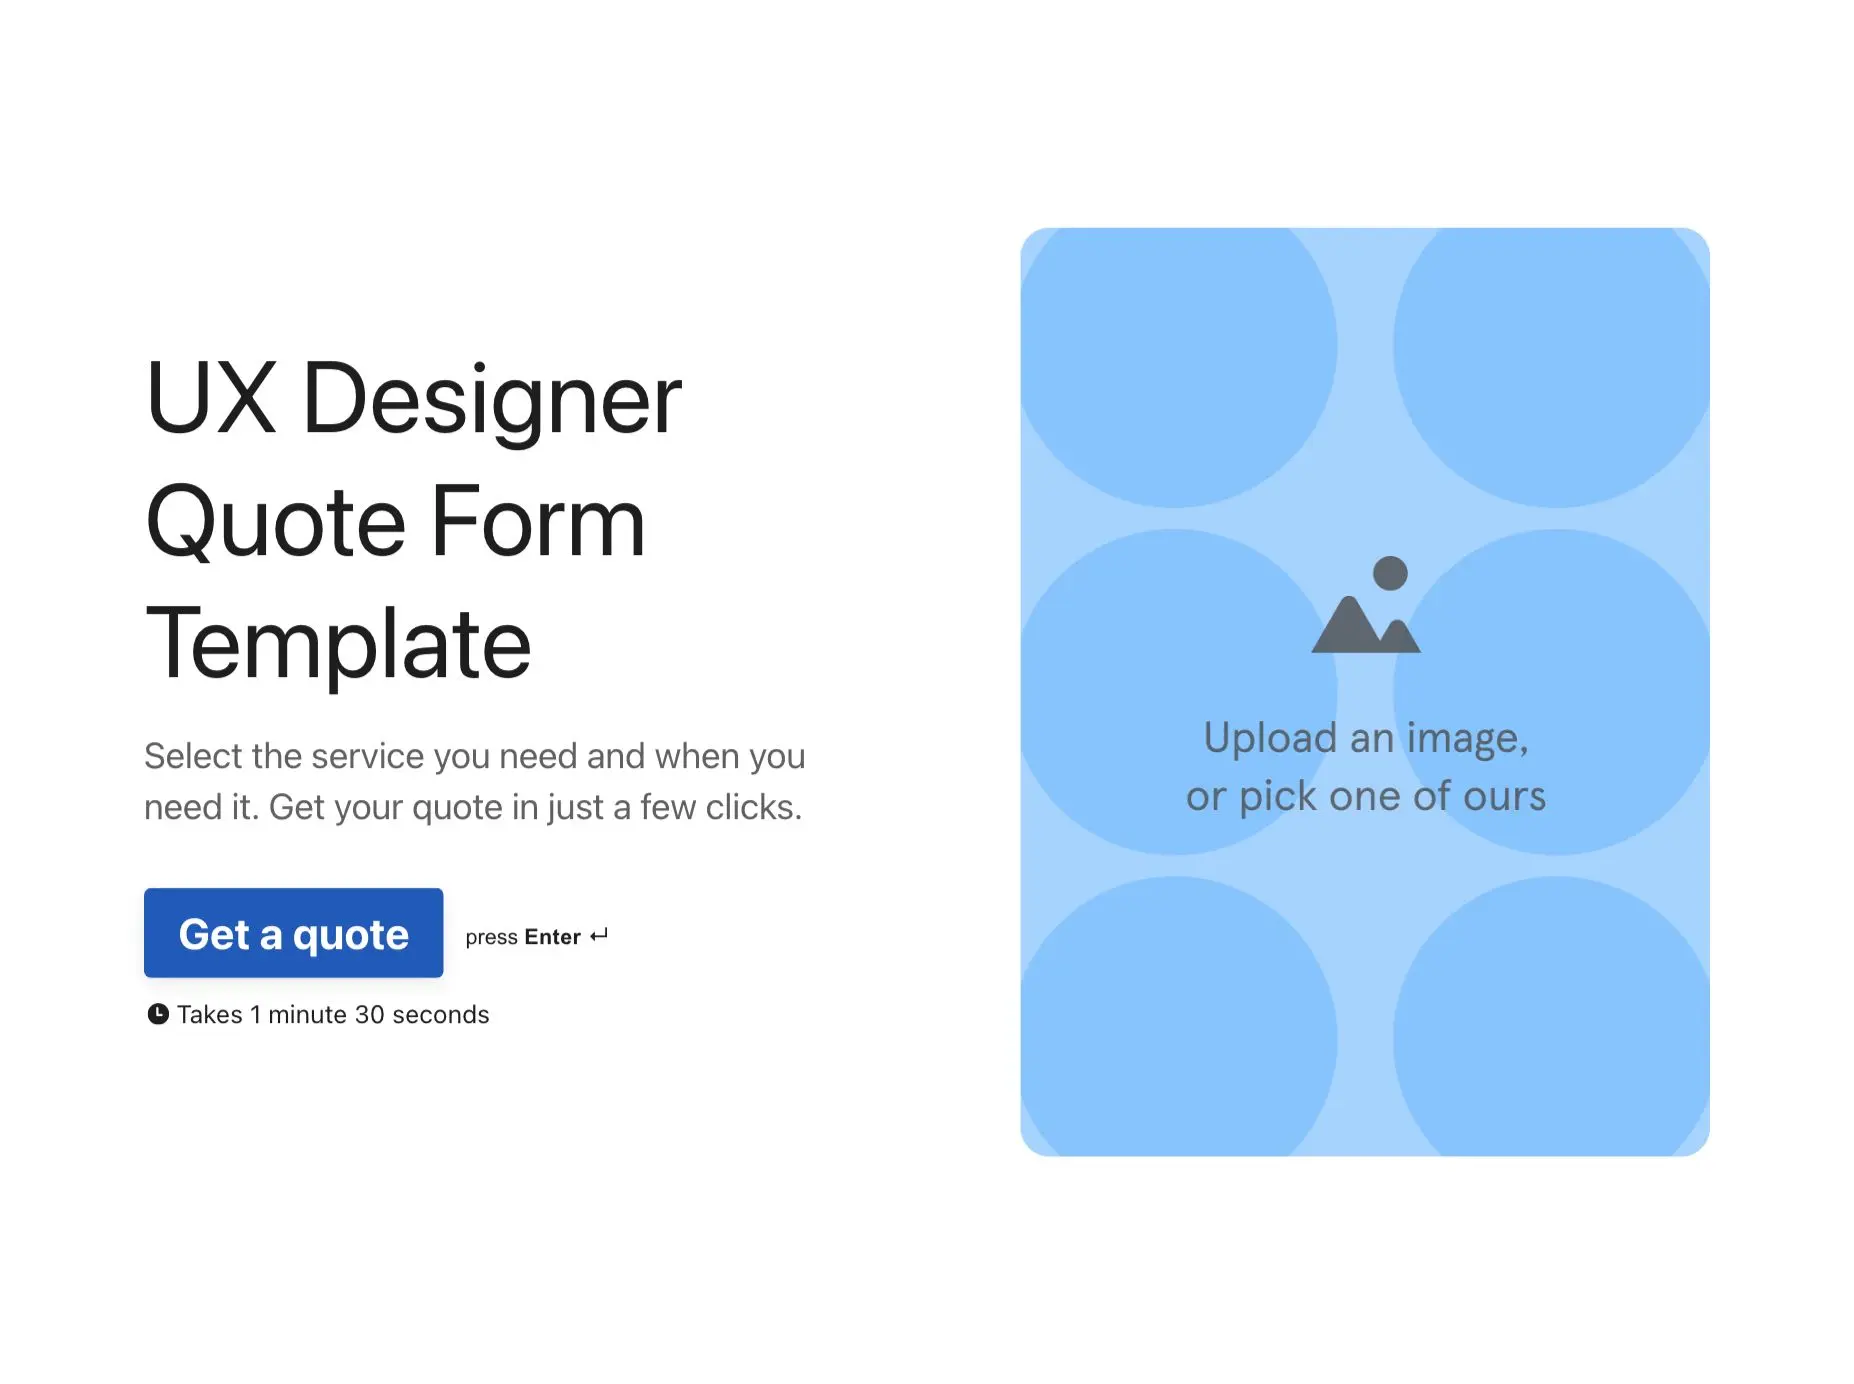 UX Designer Quote Form Template Hero